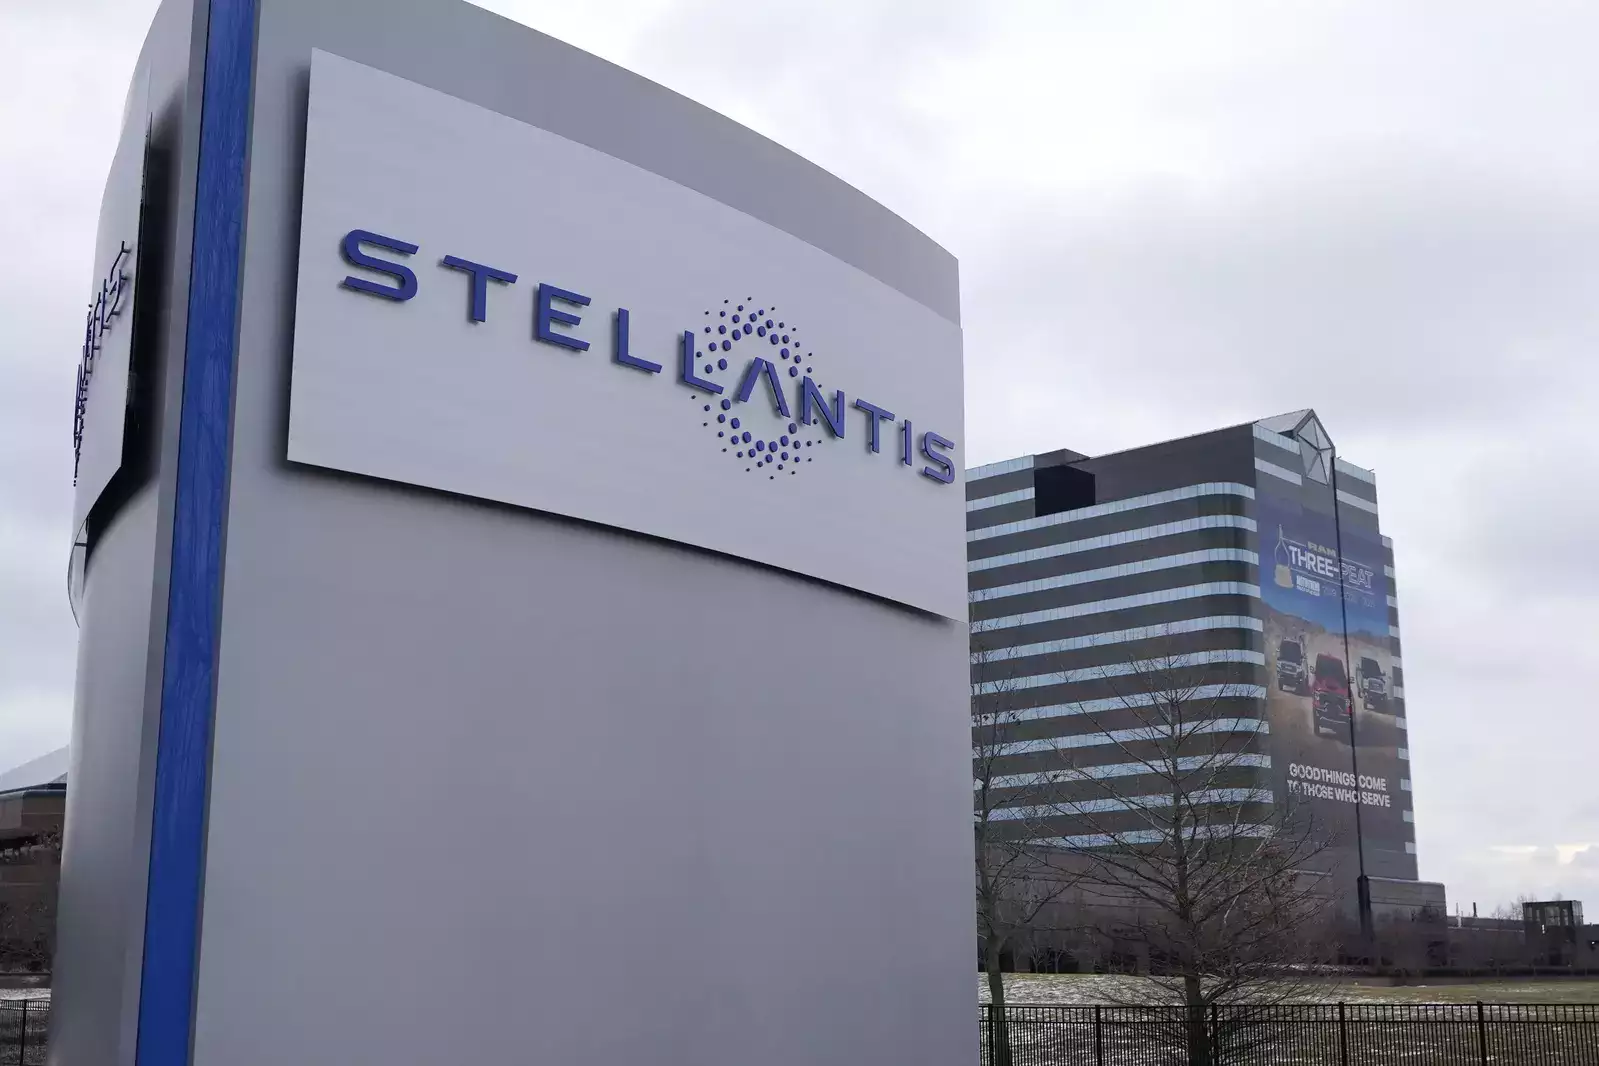 Pemerintah Serbia Menjalin Kerjasama Dengan Stellantis Untuk Produksi Mobil Listrik